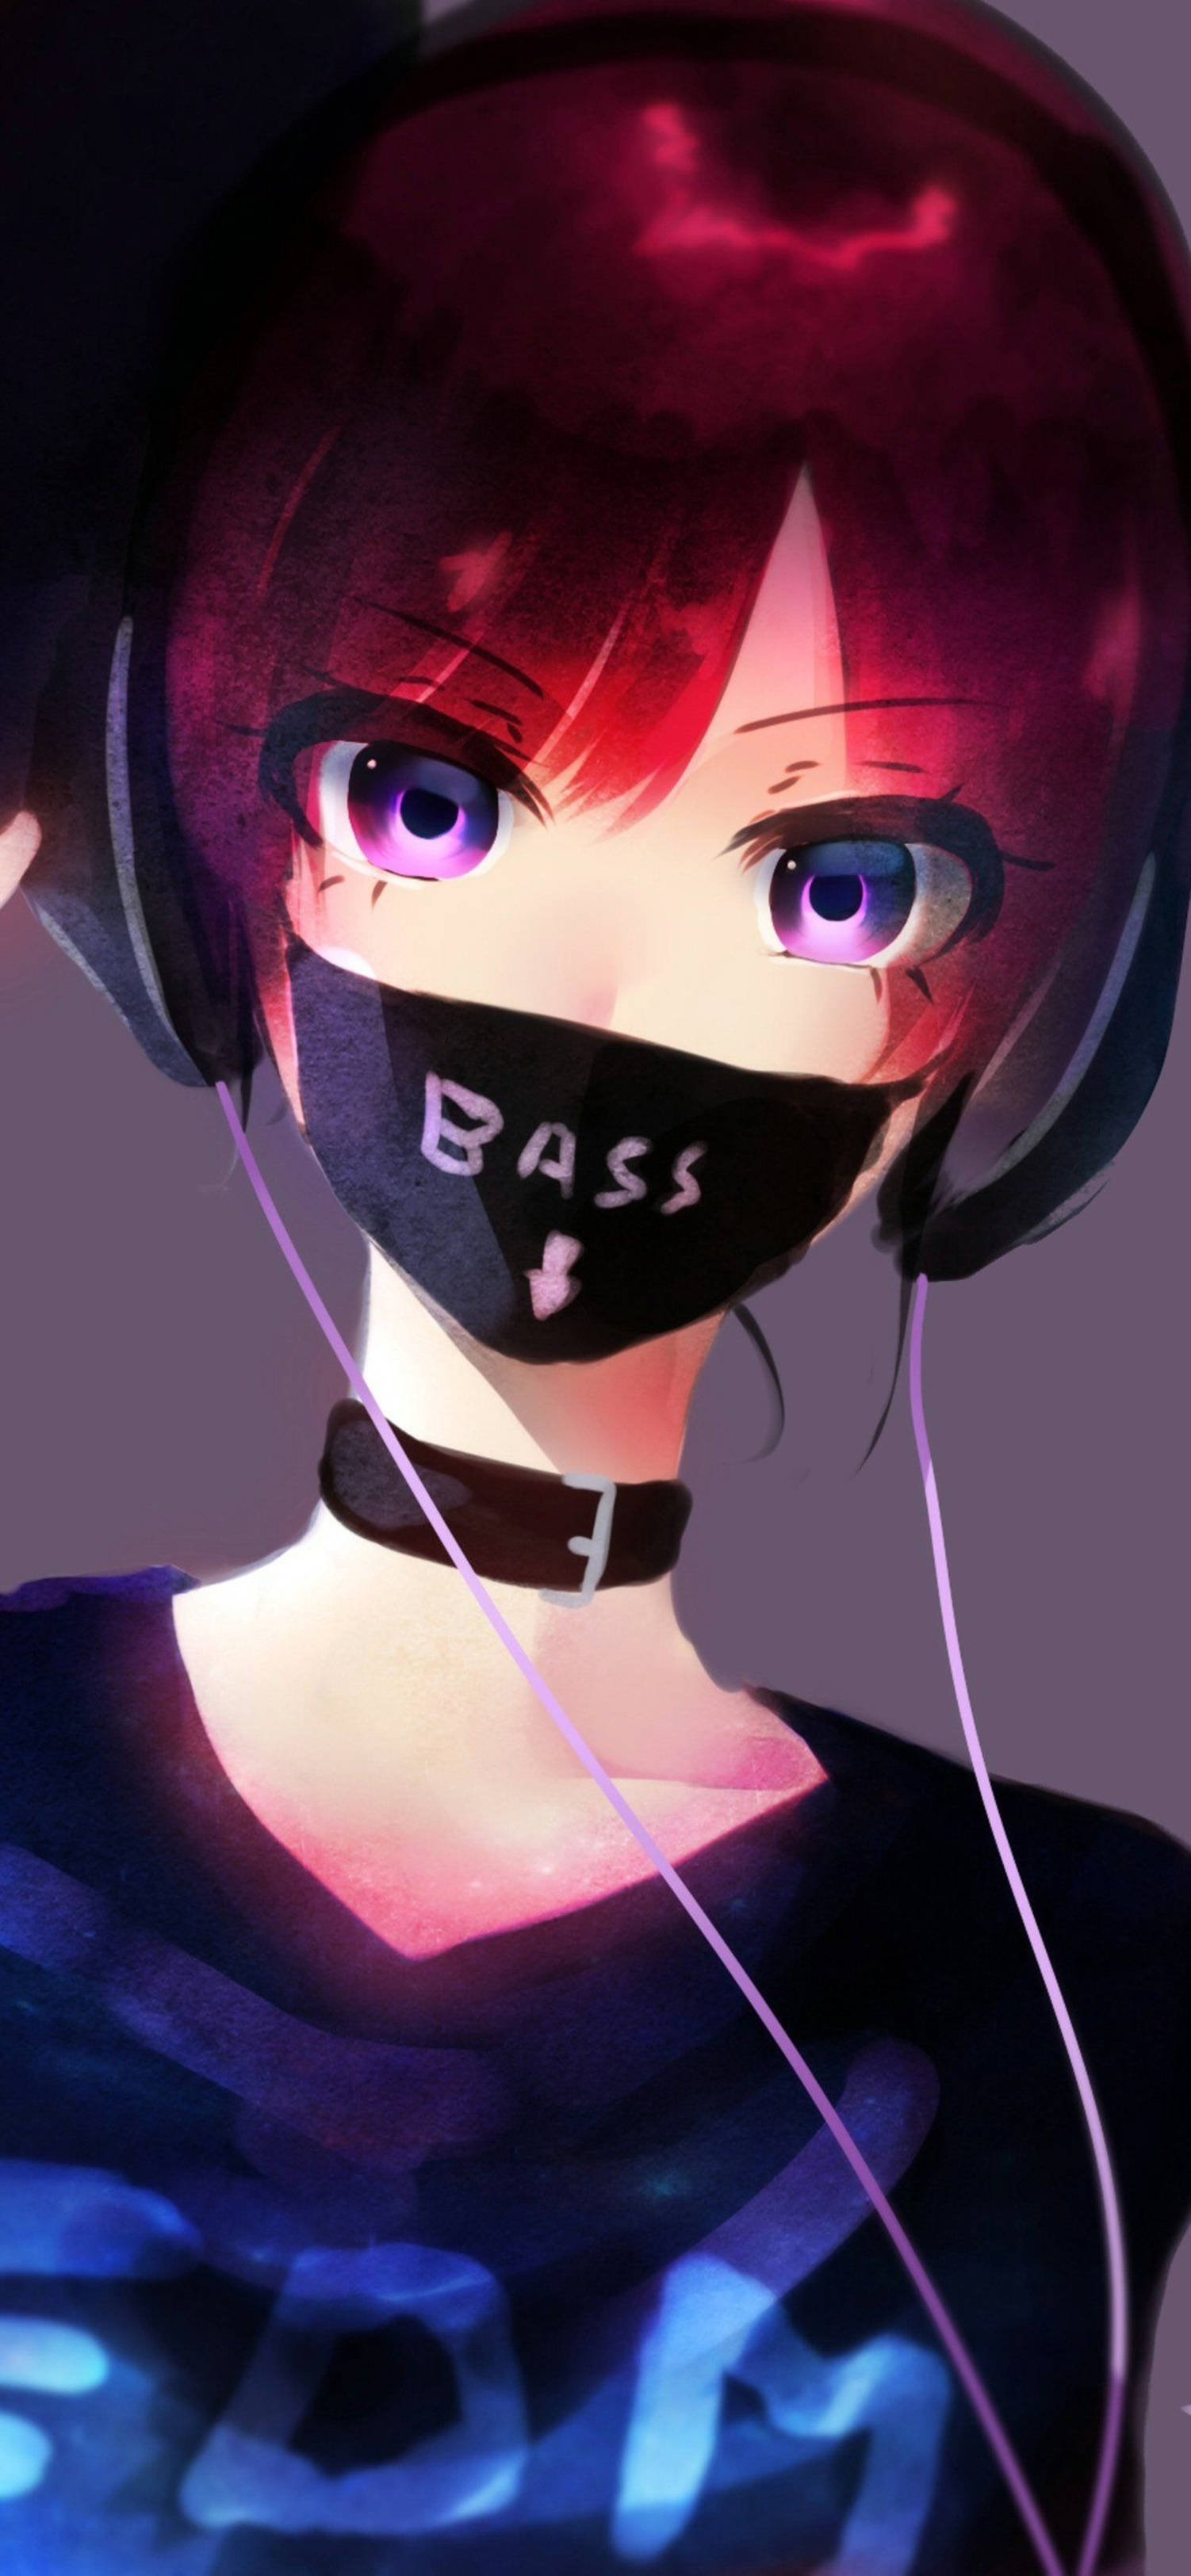 Mysterious Anime Girl In Black Mask - 4k Iphone Wallpaper Wallpaper